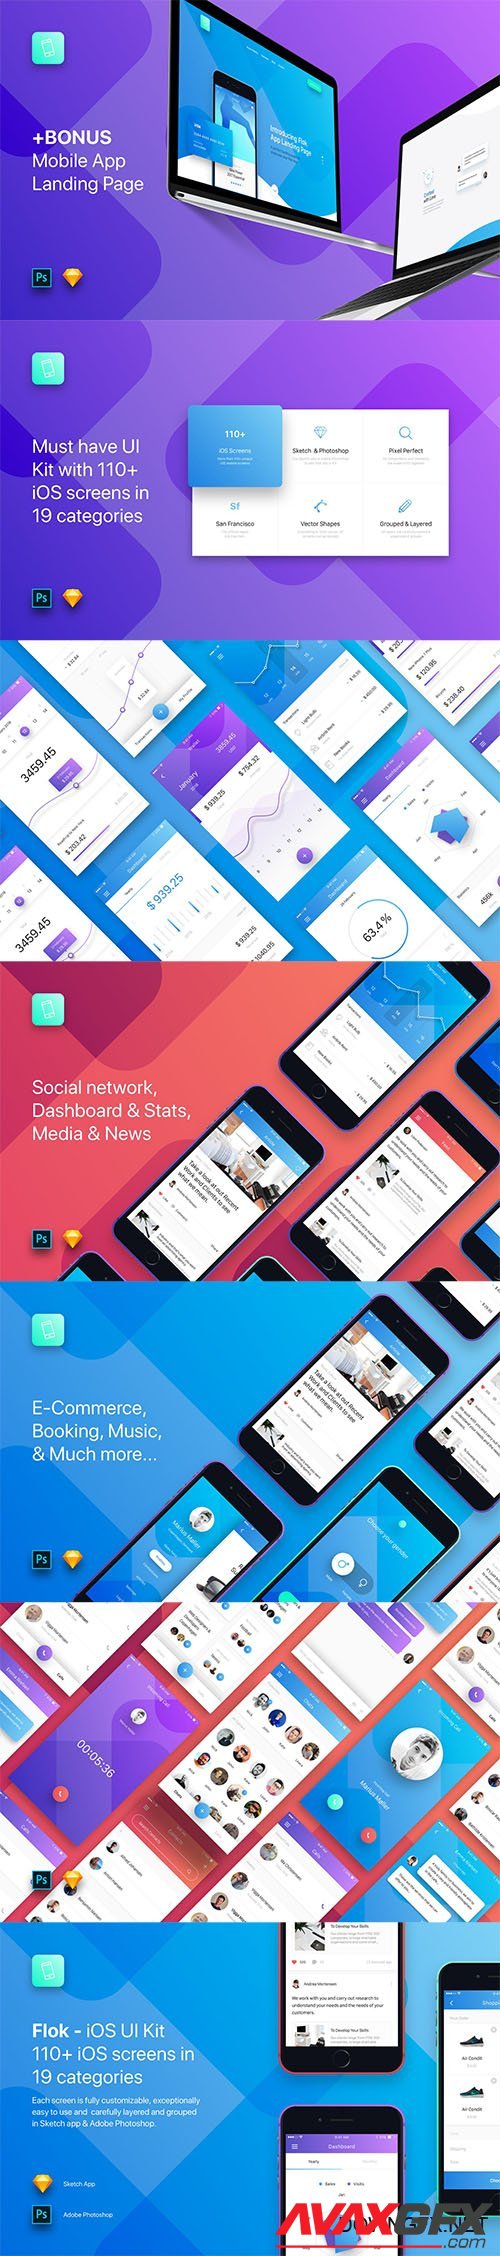 Flok - iOS UI Kit Template